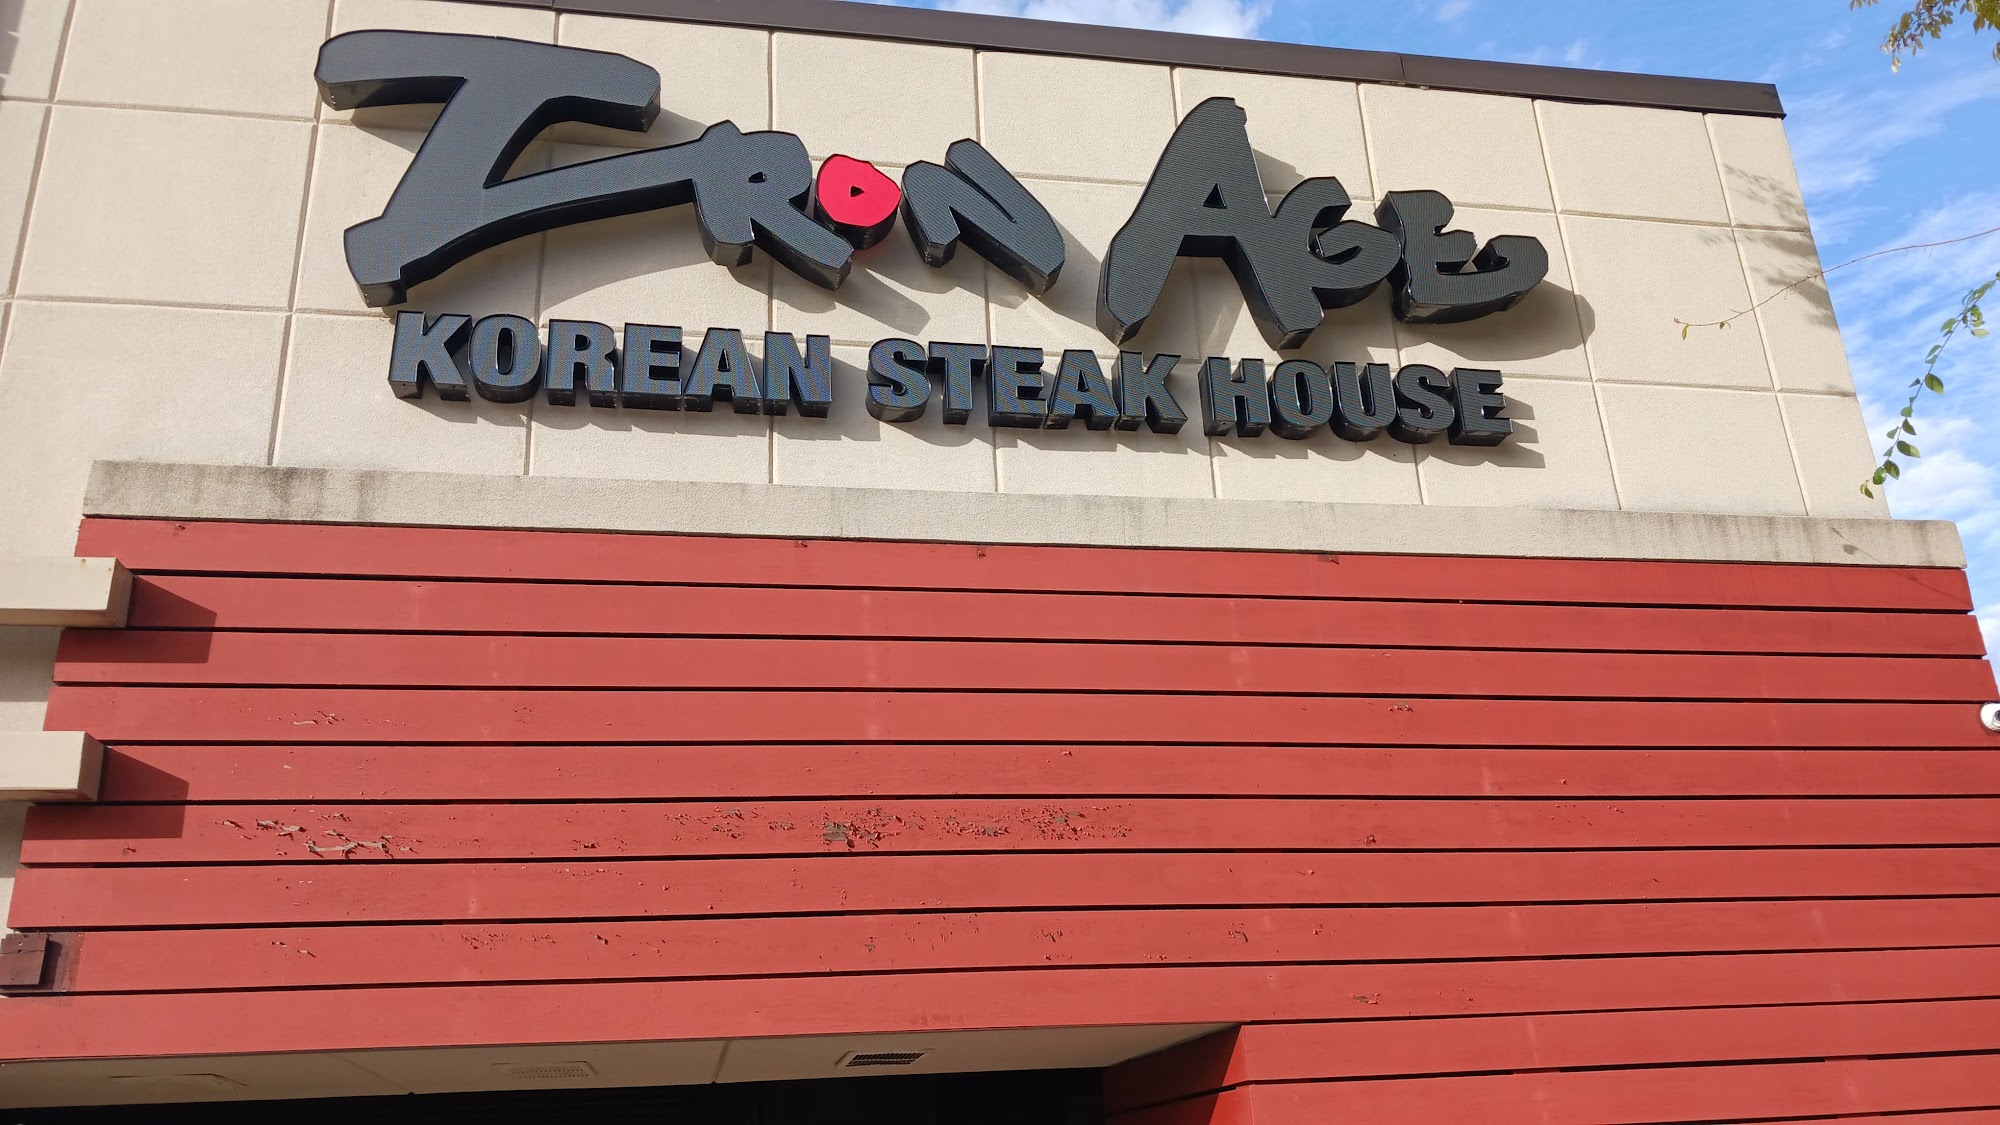 Iron Age Korean Steakhouse - Sandy Springs